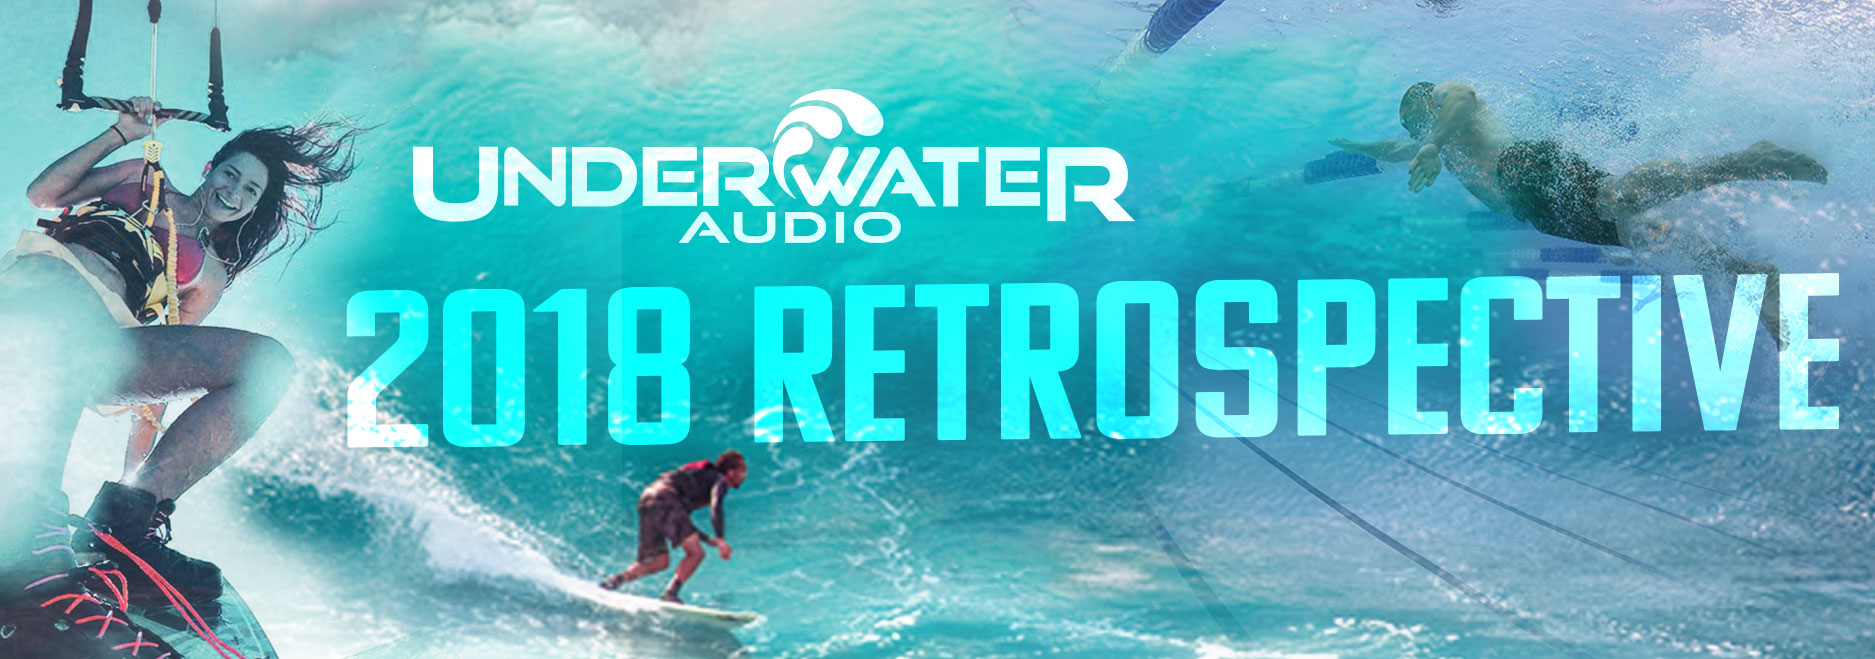 Underwater Audio 2018 Retrospective